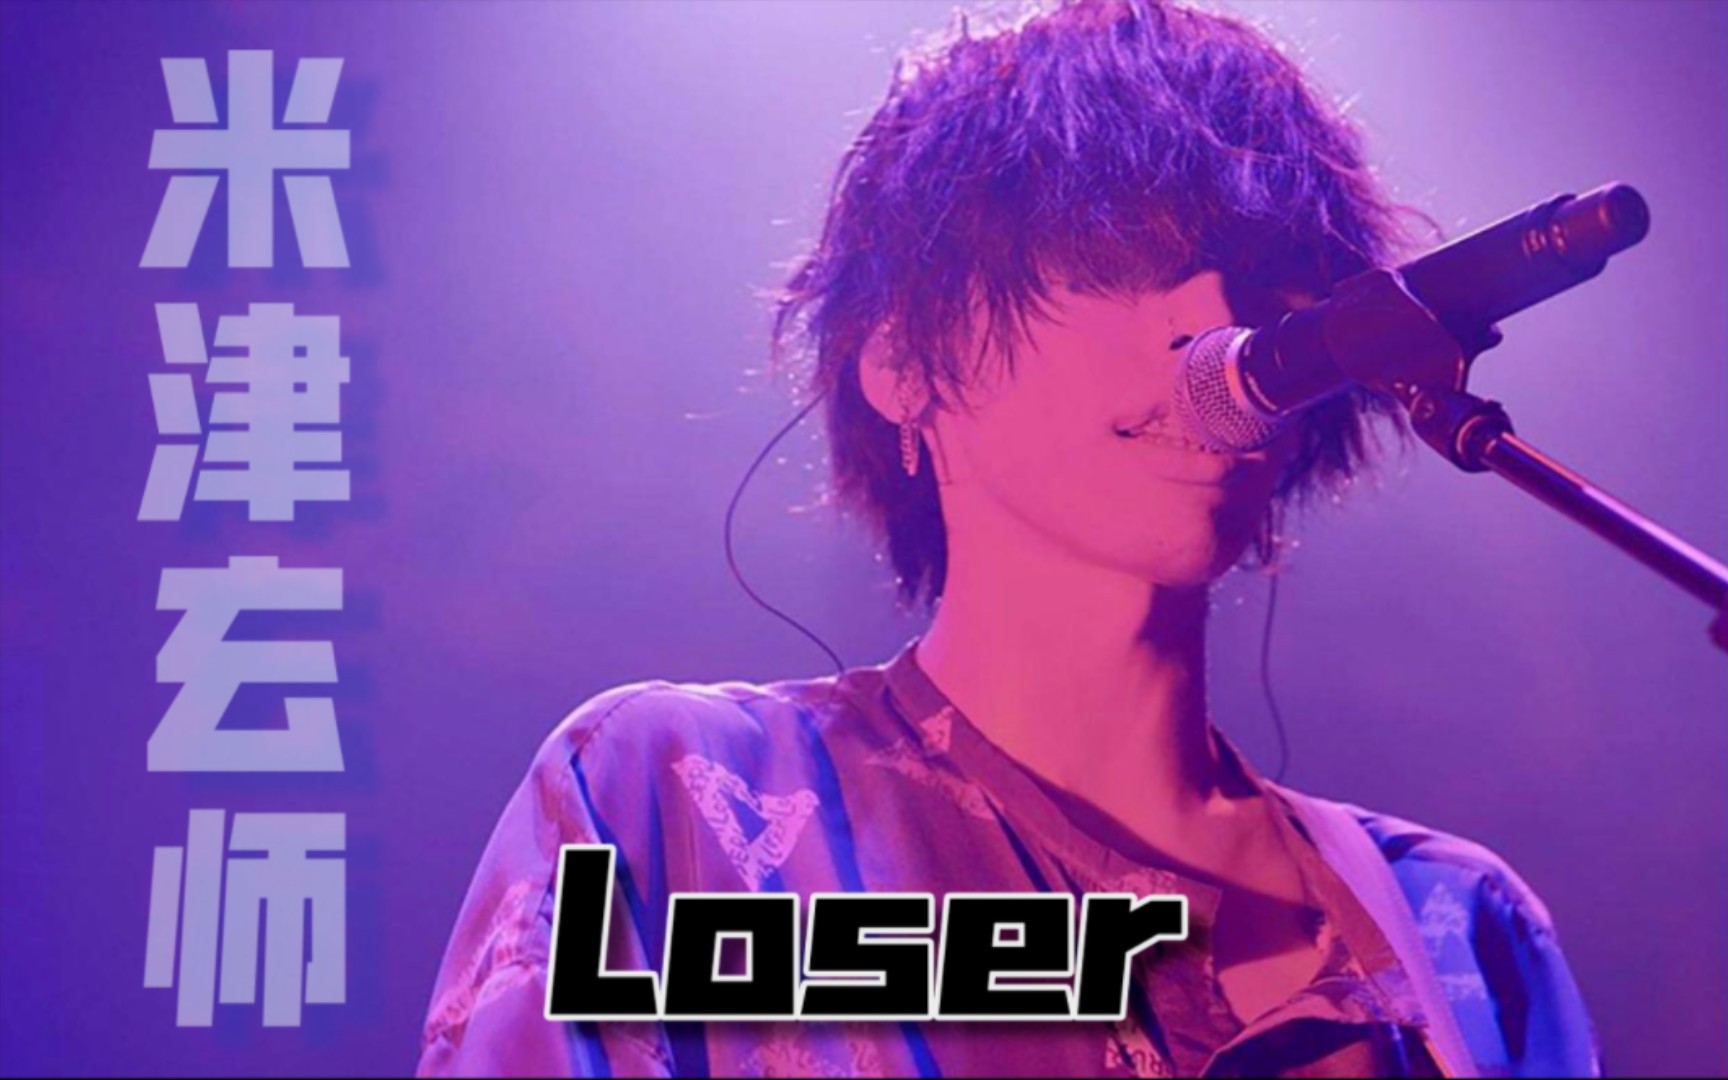 米津玄师《loser》,高品质音源,完整版视频,请欣赏